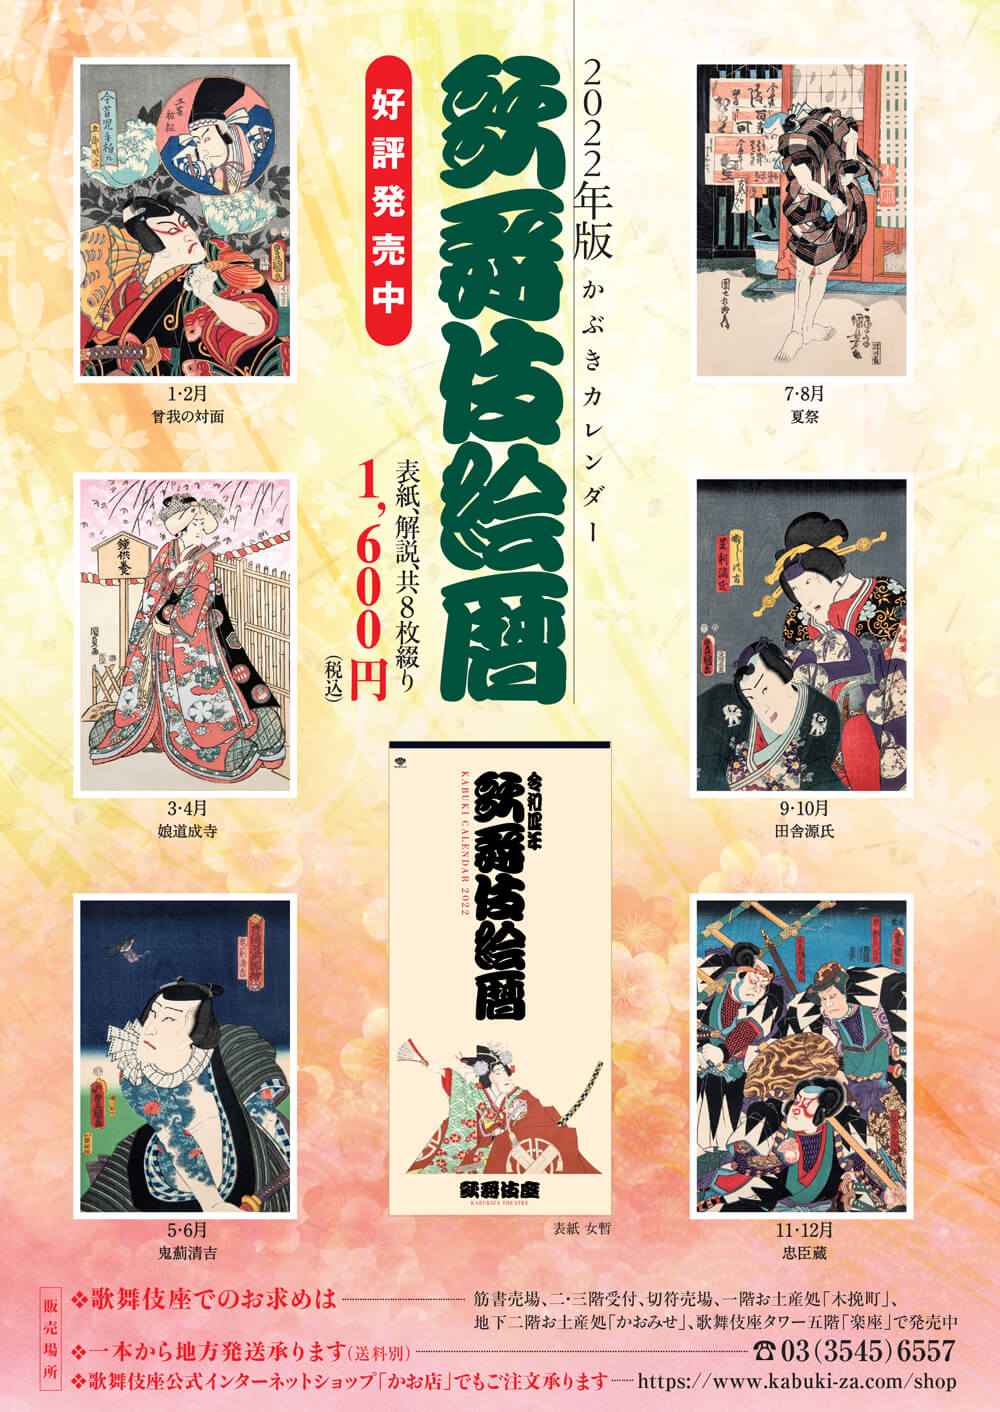 2022年版かぶきカレンダー「歌舞伎絵暦」